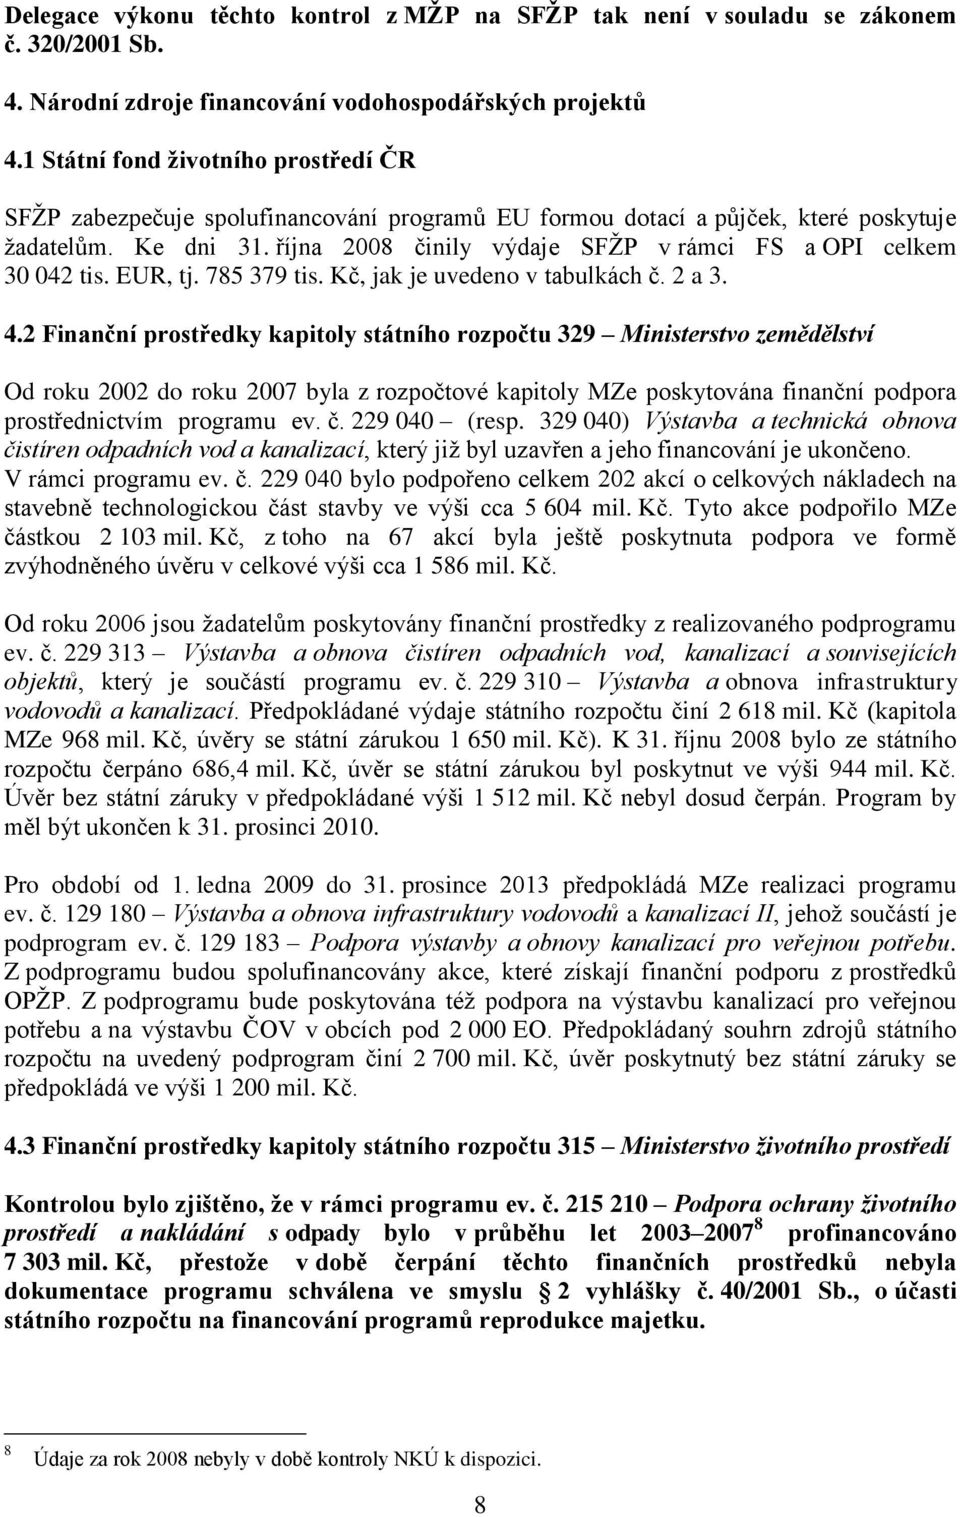 října 2008 činily výdaje SFŢP v rámci FS a OPI celkem 30 042 tis. EUR, tj. 785 379 tis. Kč, jak je uvedeno v tabulkách č. 2 a 3. 4.